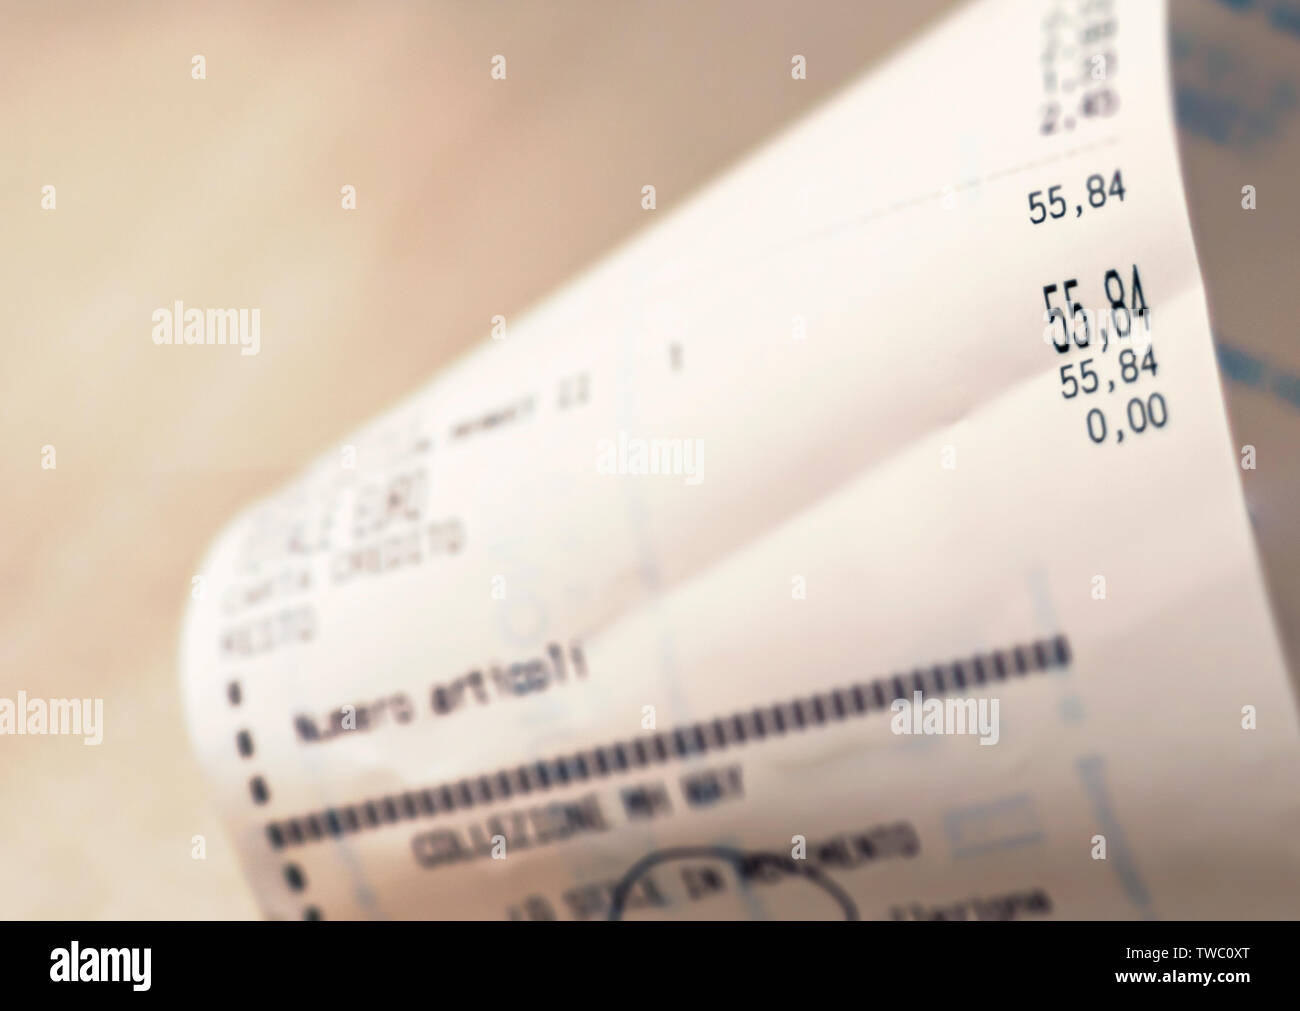 Vista ravvicinata della quantità totale di supermercato spesa stampate su una ricevuta della carta. Negozio di generi alimentari shopping list Foto Stock